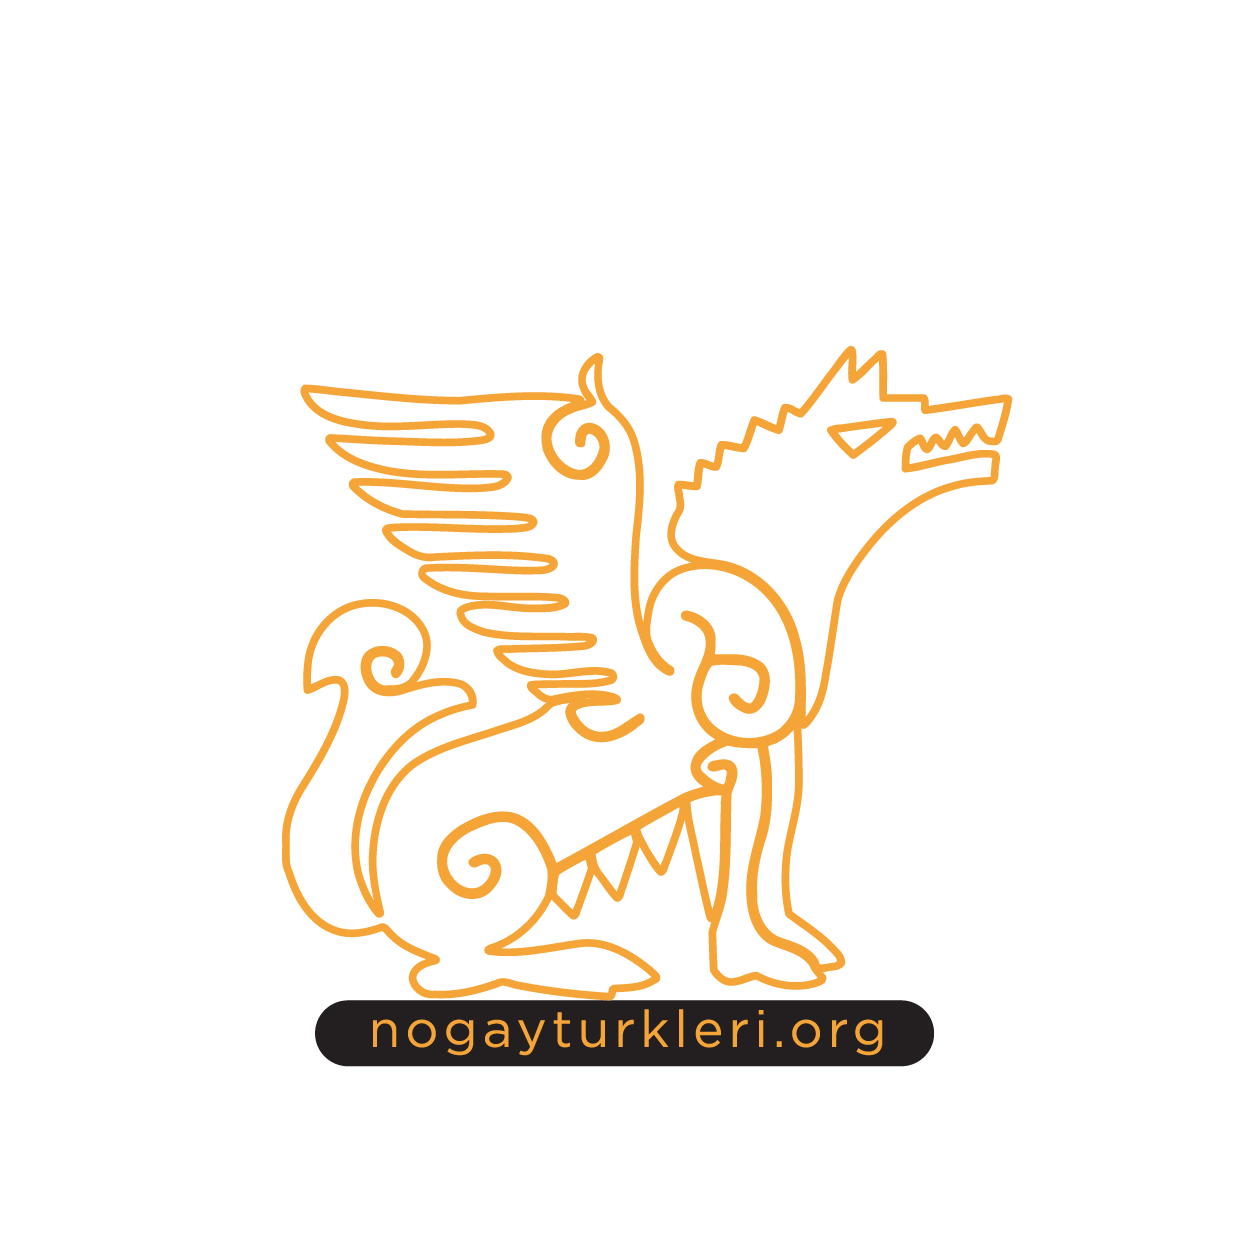 Nogay Türkleri